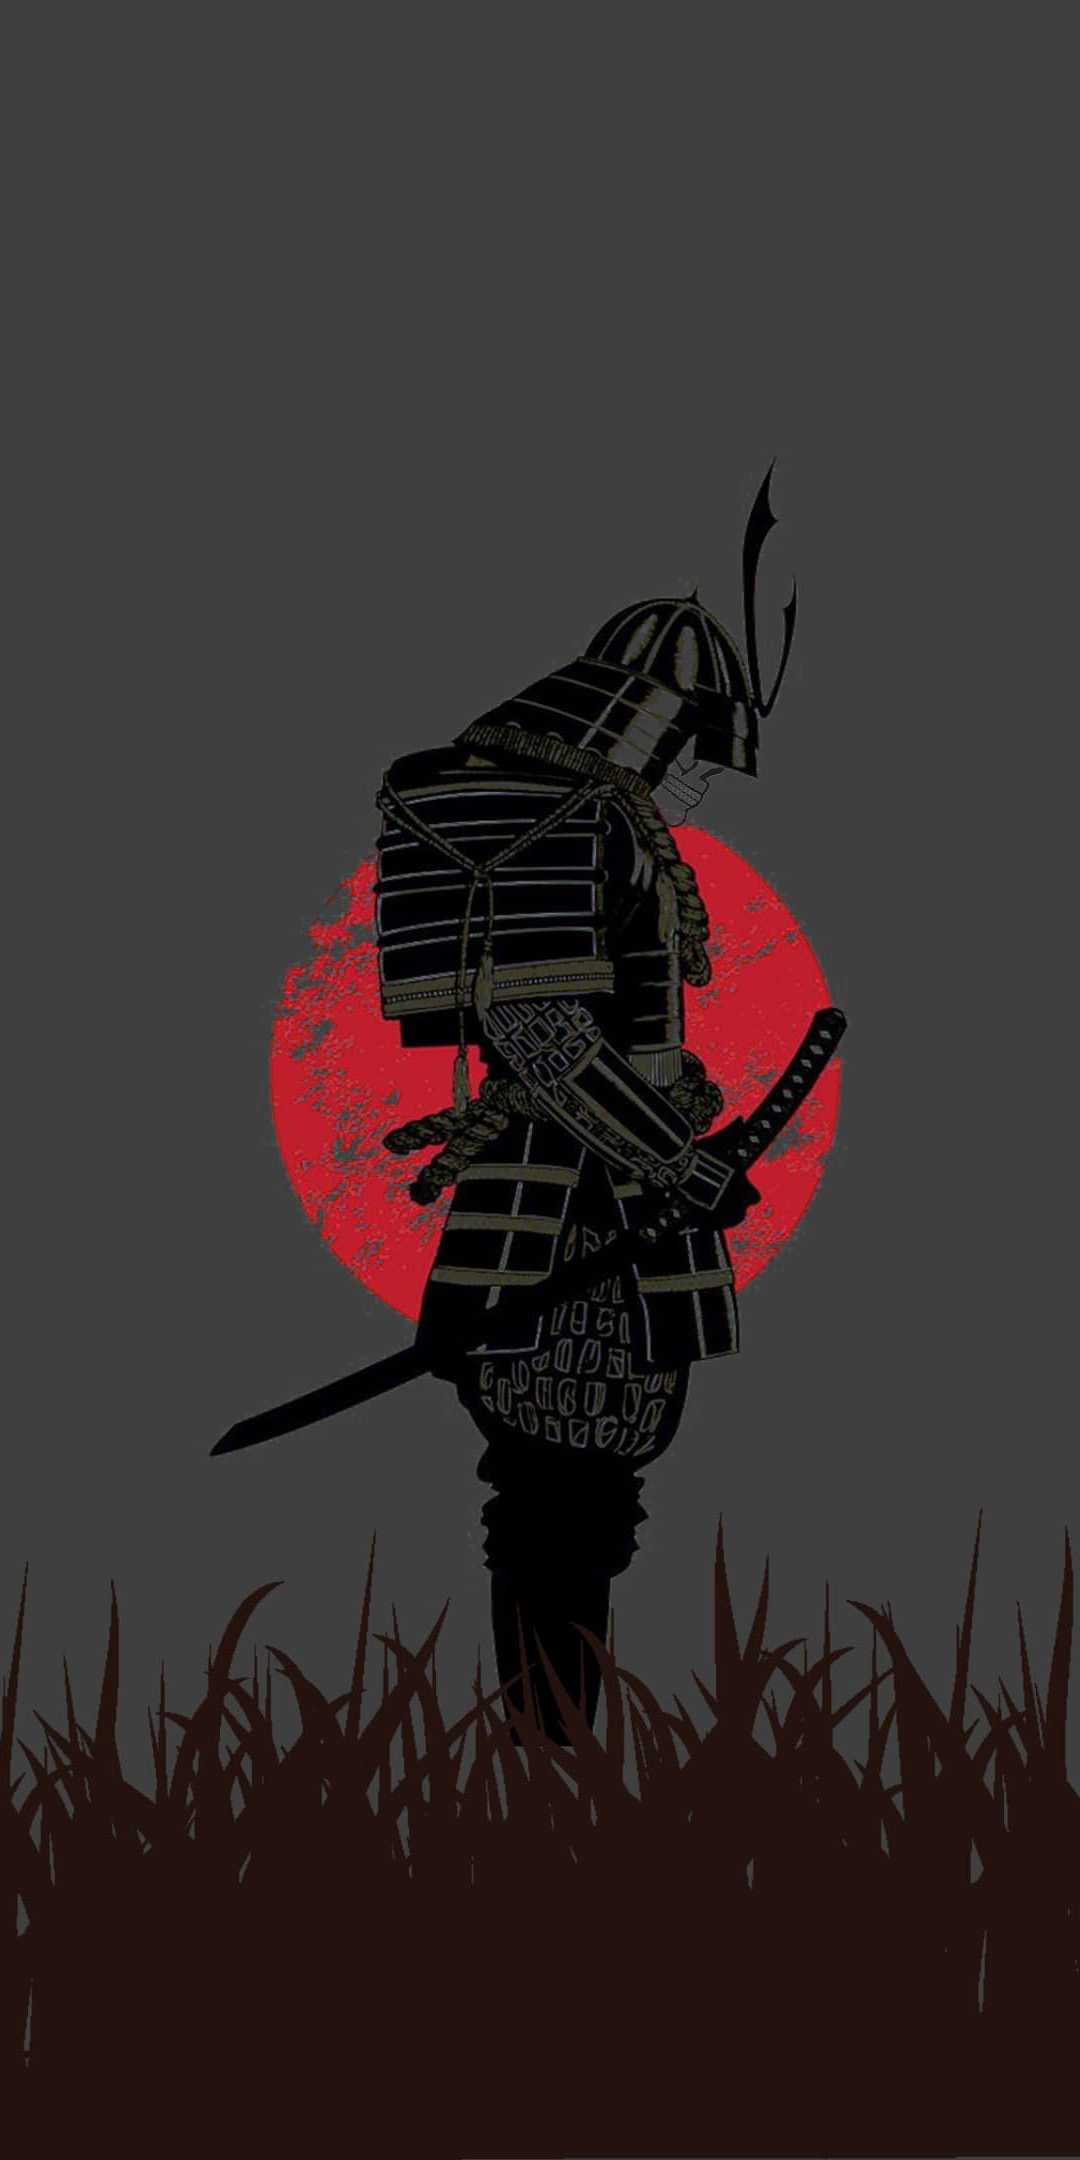 Red Samurai Wallpapers